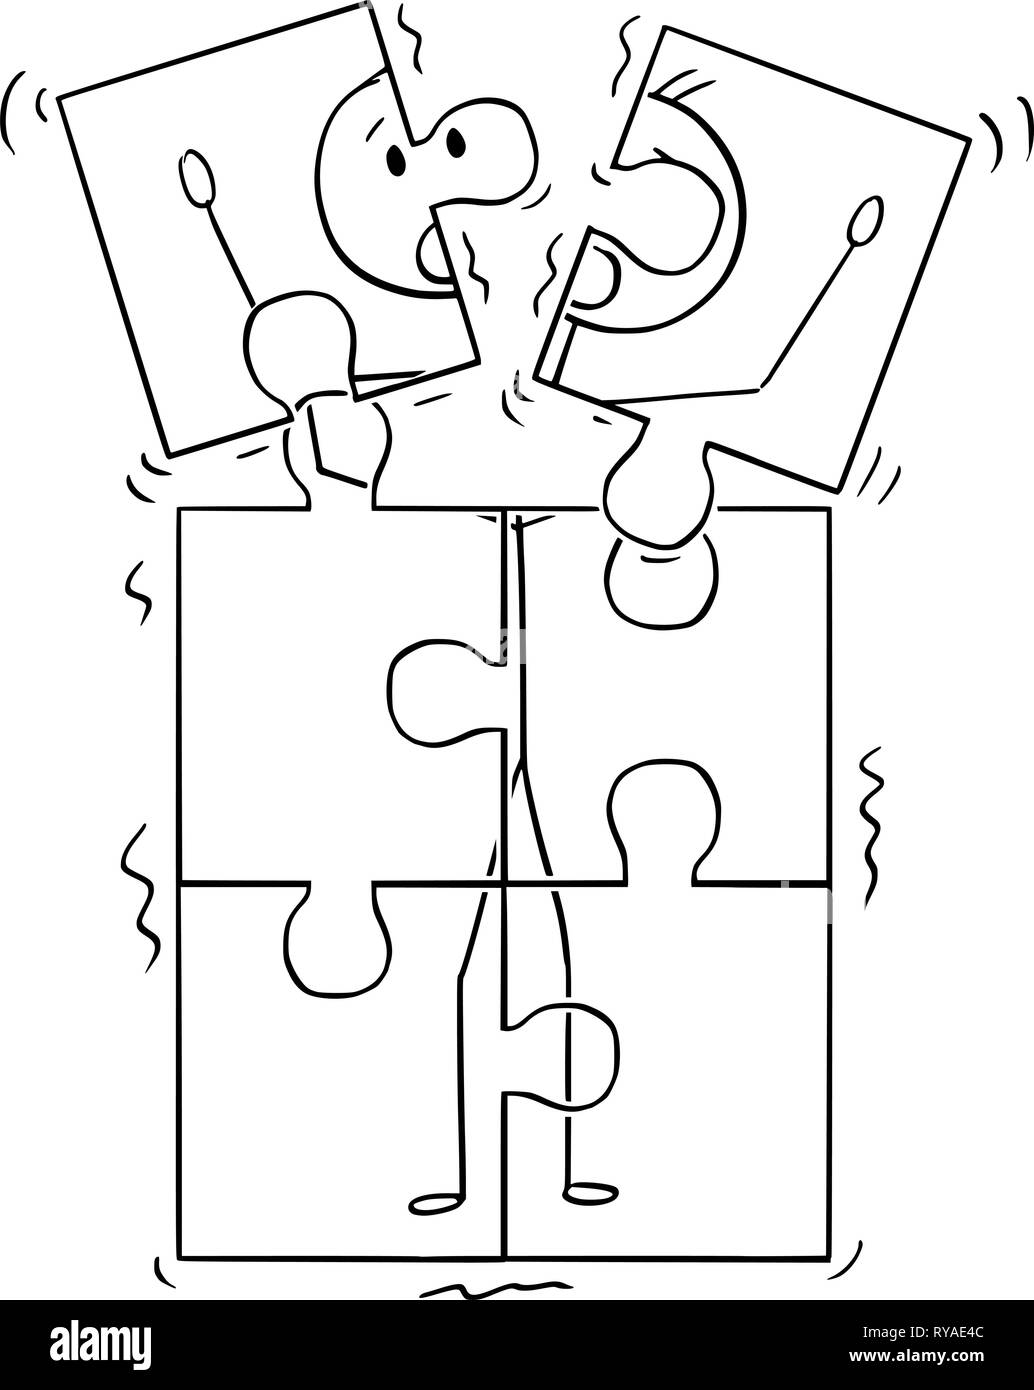 Cartoon von Bild des Menschen Broking in Puzzle Stücke Stock Vektor